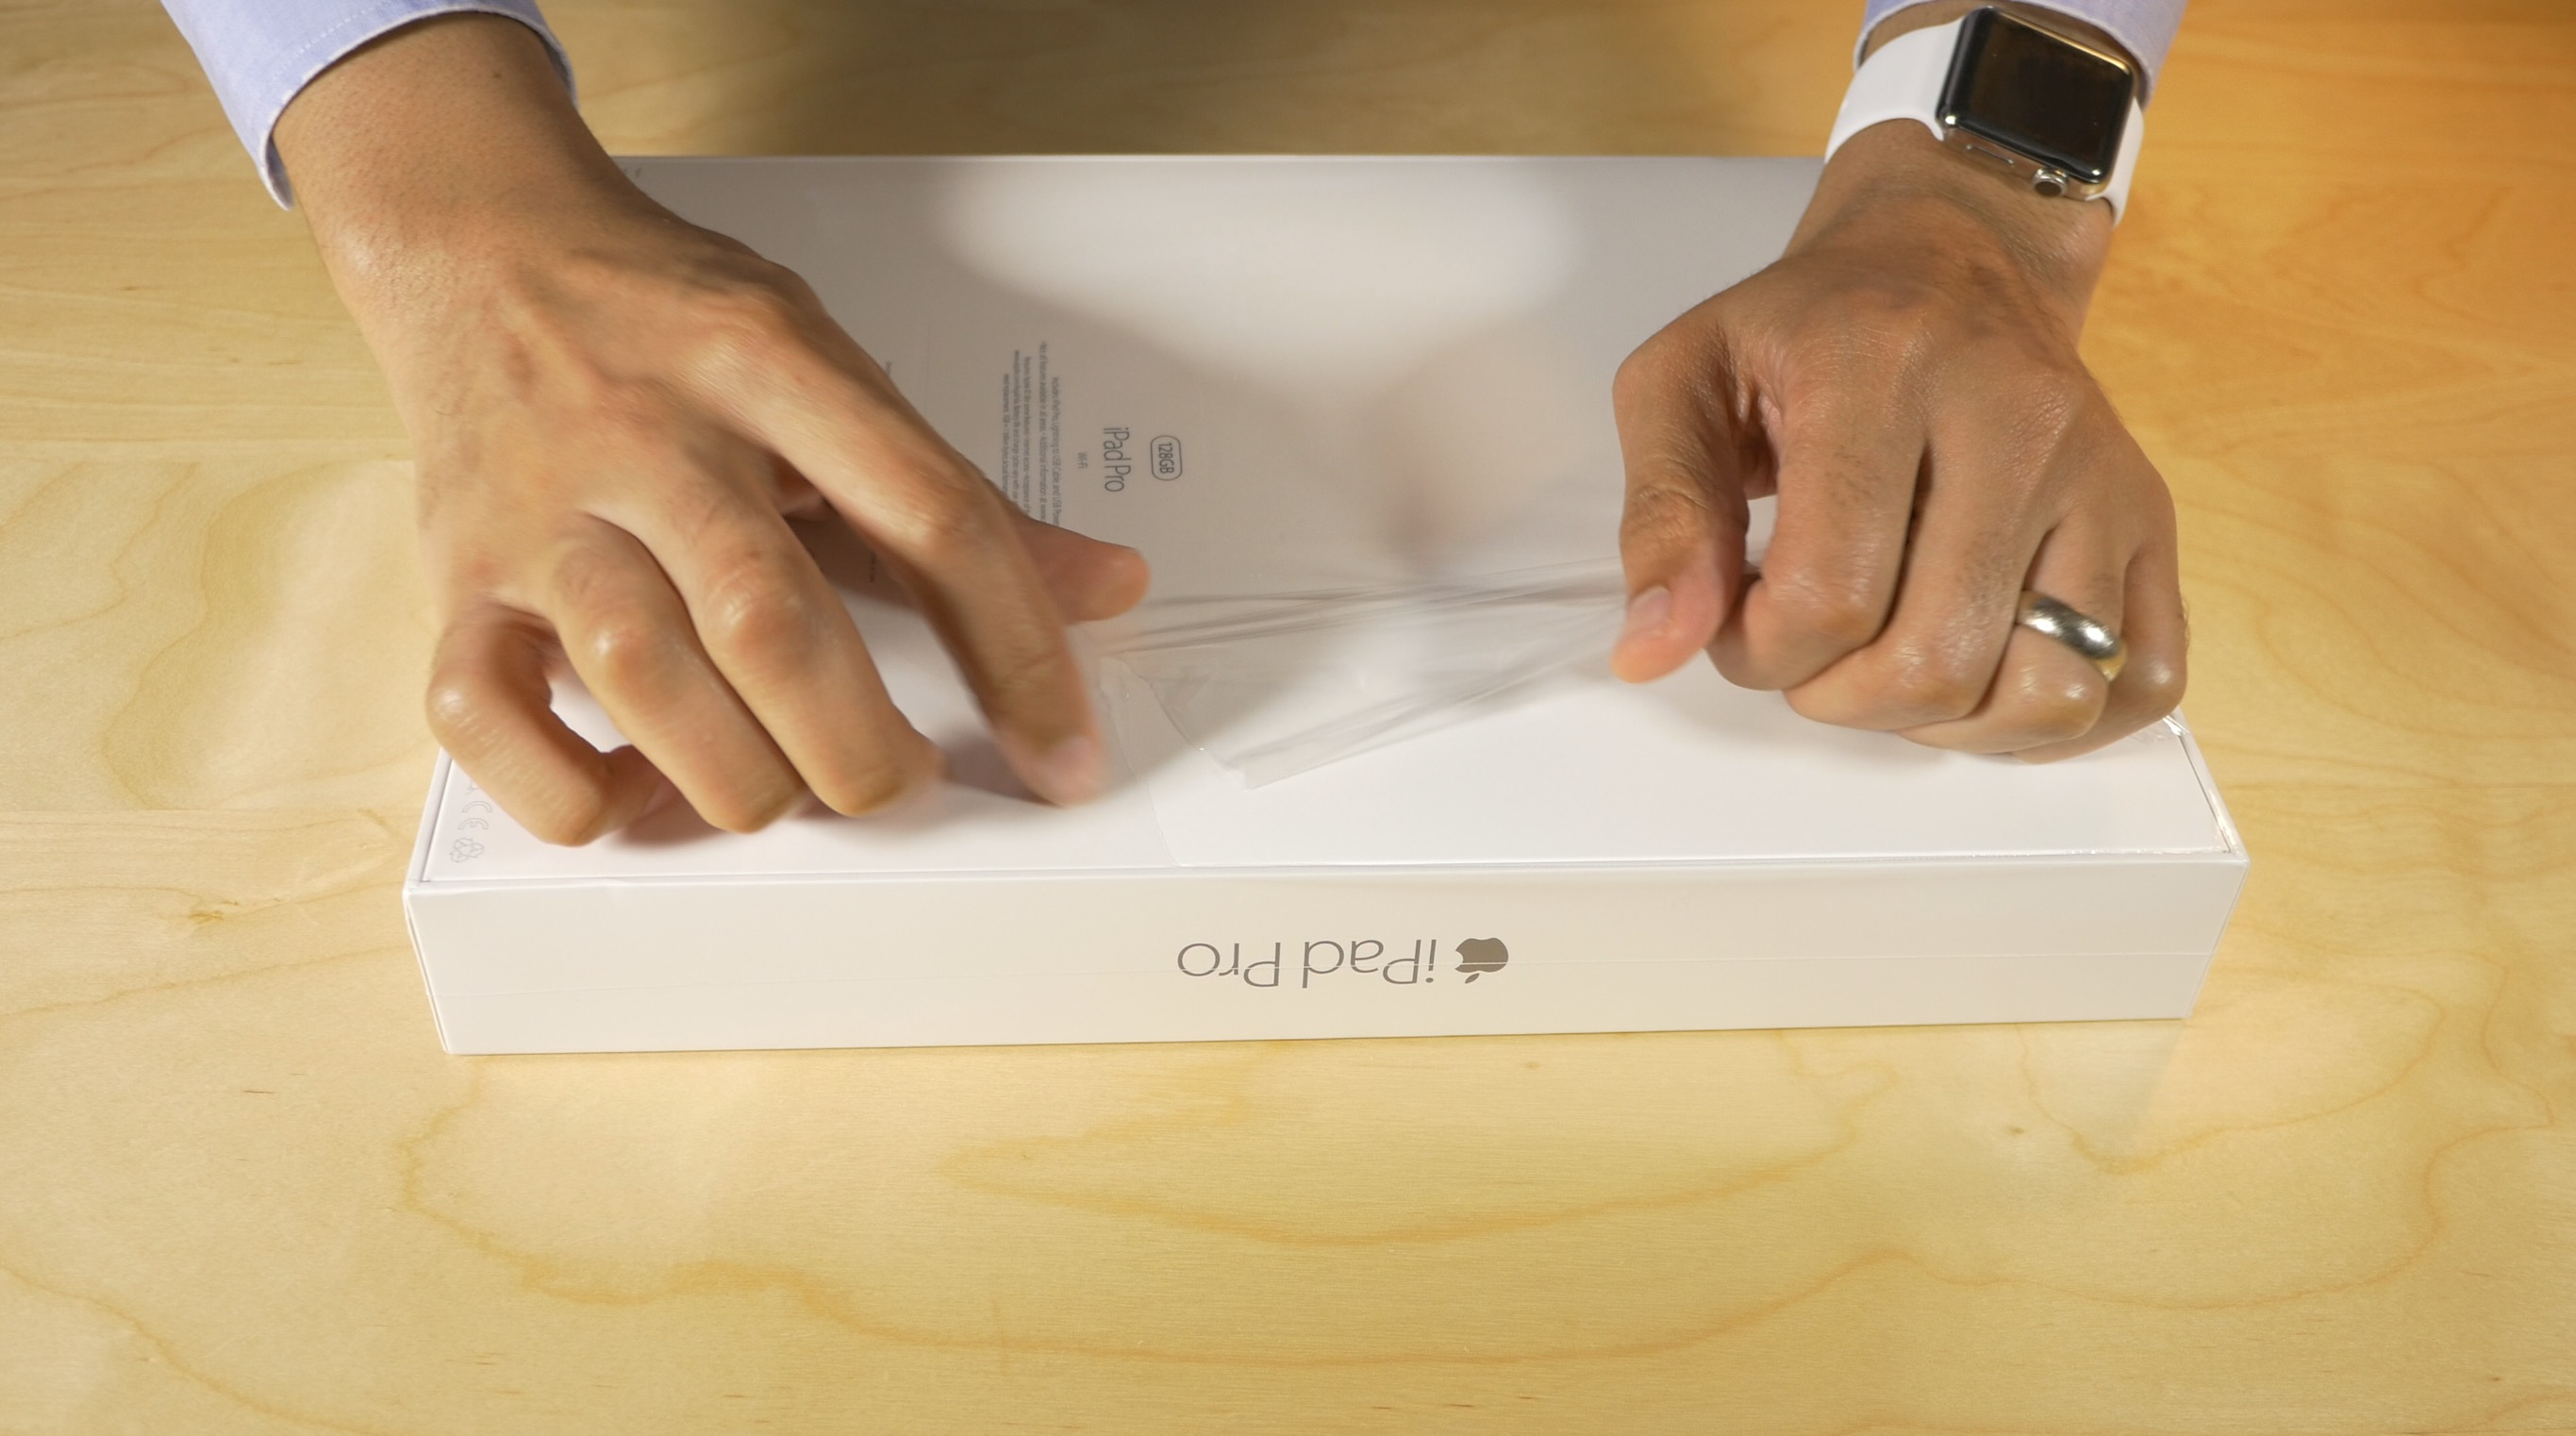 iPad Pro first impressions